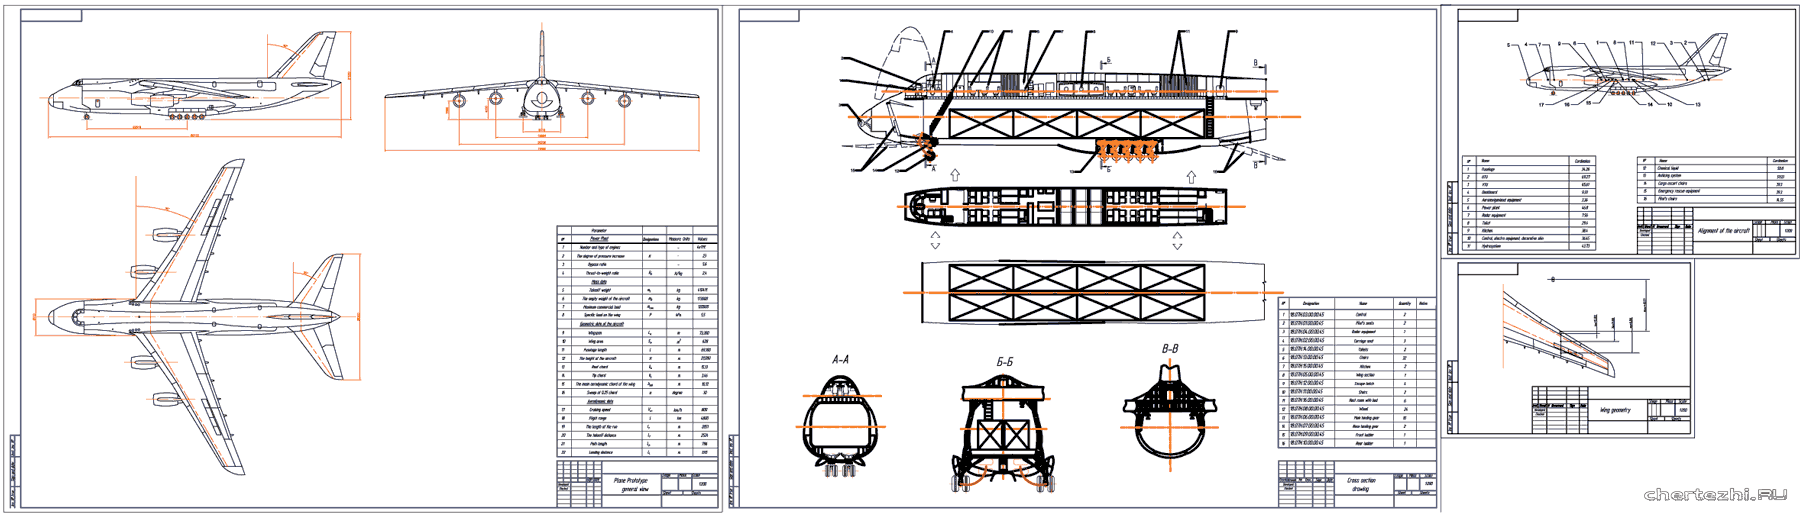 Курсовой проект - Проектирование самолета на базе АН-124 Руслан (англоязычный проект)